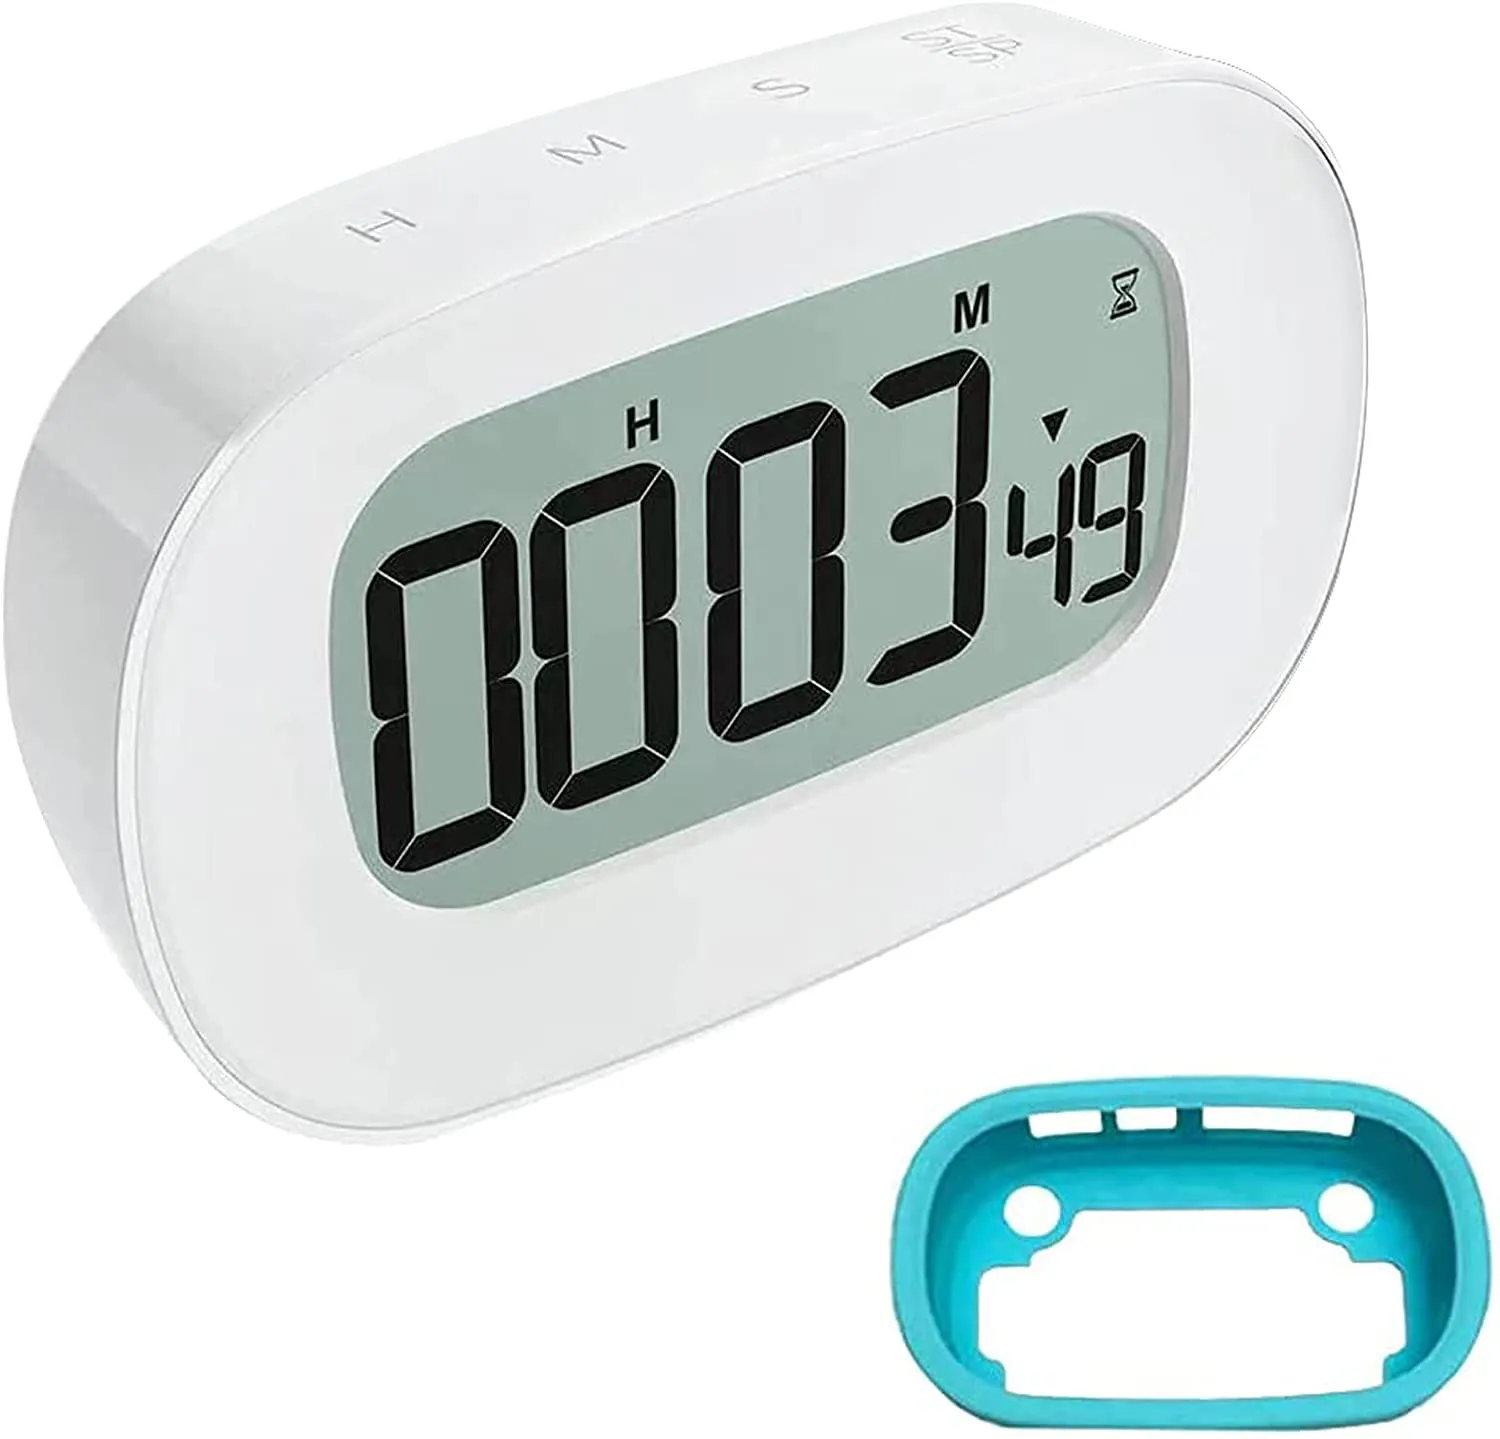 Zegar zegarowy i zegar kuchenny, duży wyświetlacz LCD, cyfrowe zegary odliczkowe z tyłu magnetyczne, wyświetlacz 12H / 24h